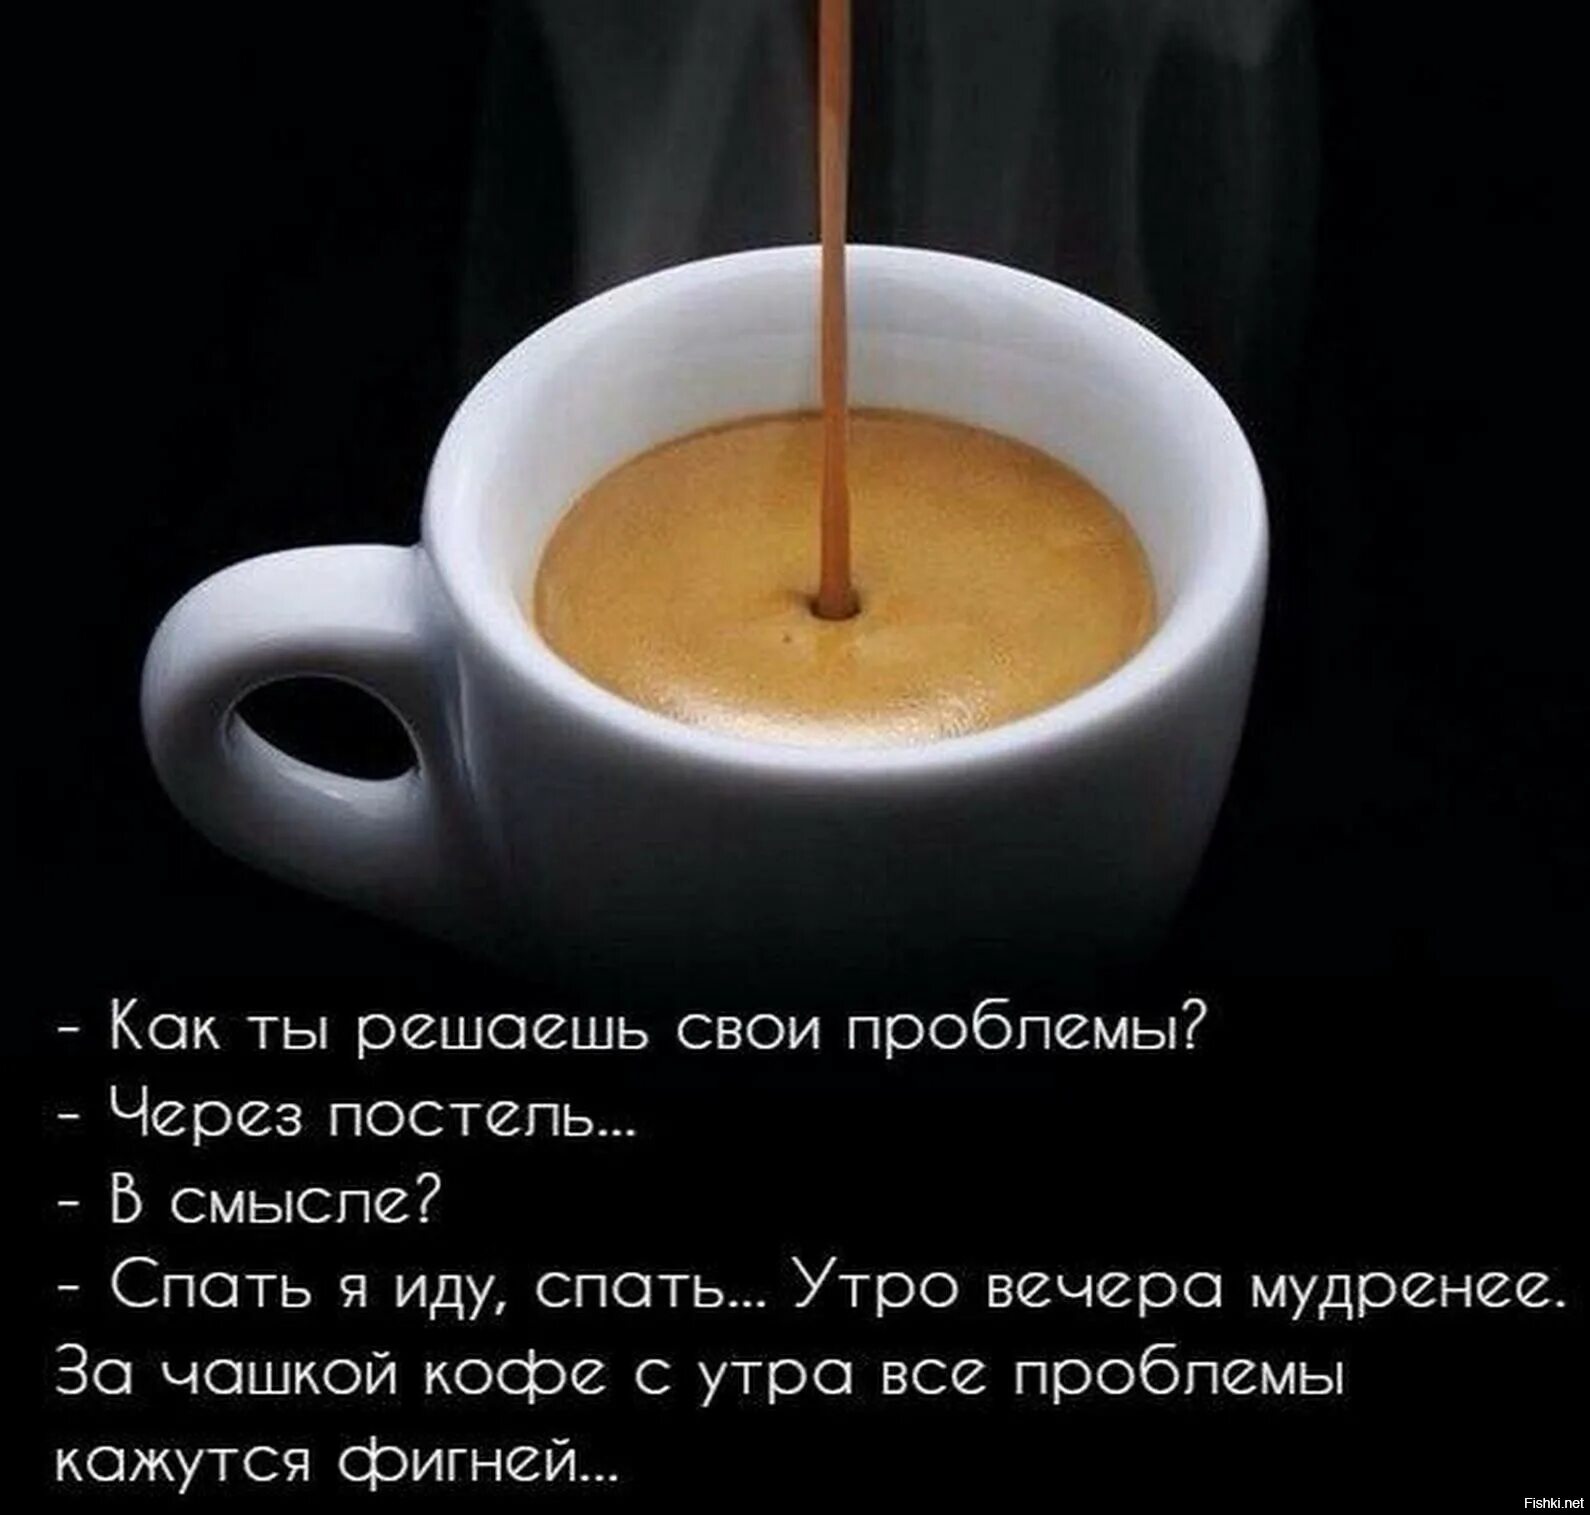 Цитаты про кофе. Статусы про кофе. Цитаты про кофе и утро. Фразы про кофе. Статус на утро